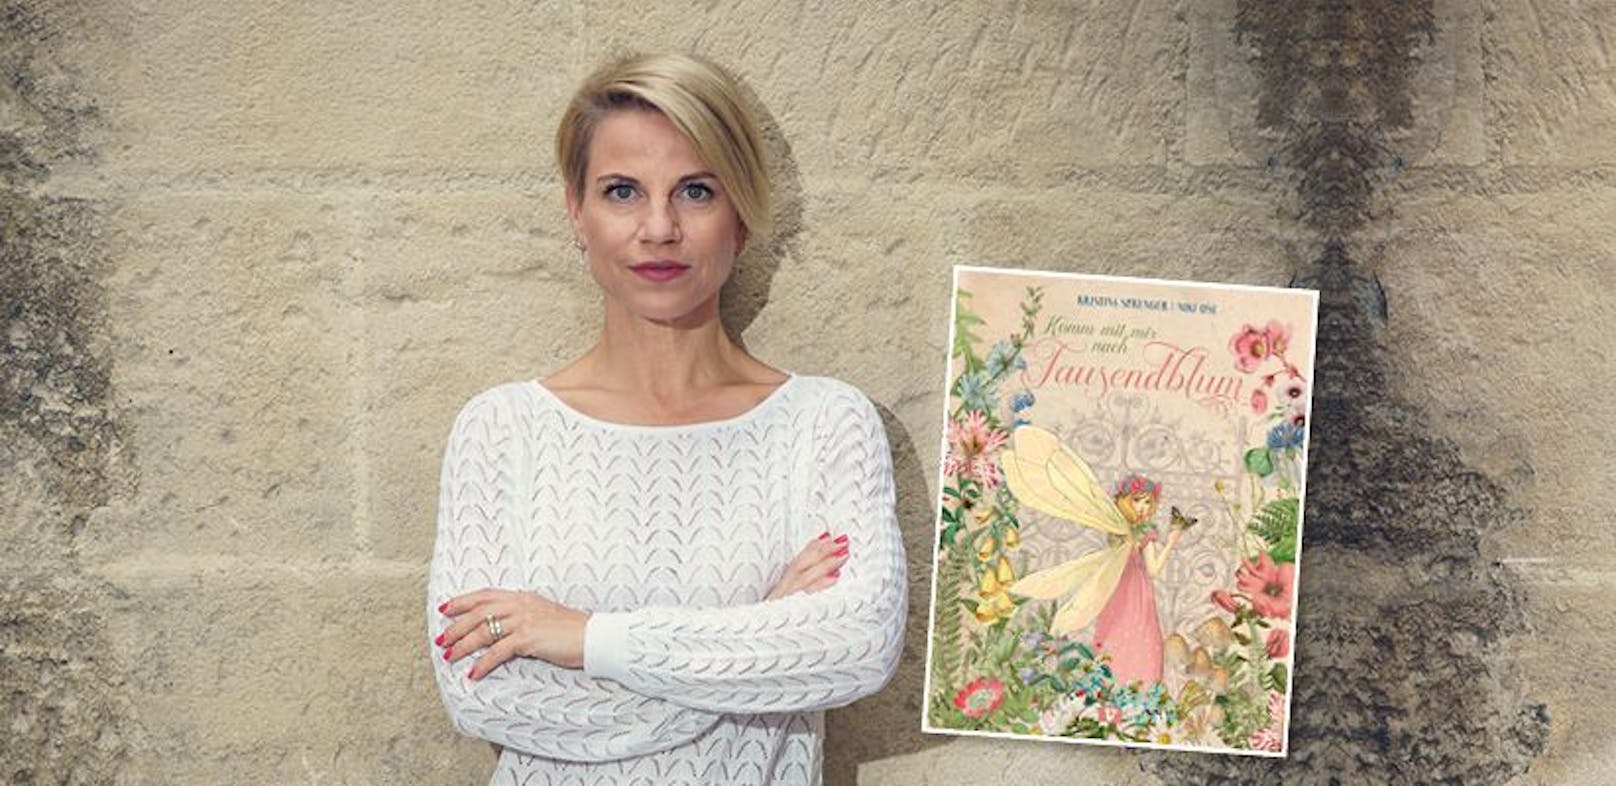 Das neue Kinderbuch "Komm mit mir nach Tausendblum" von Kristina Sprenger.